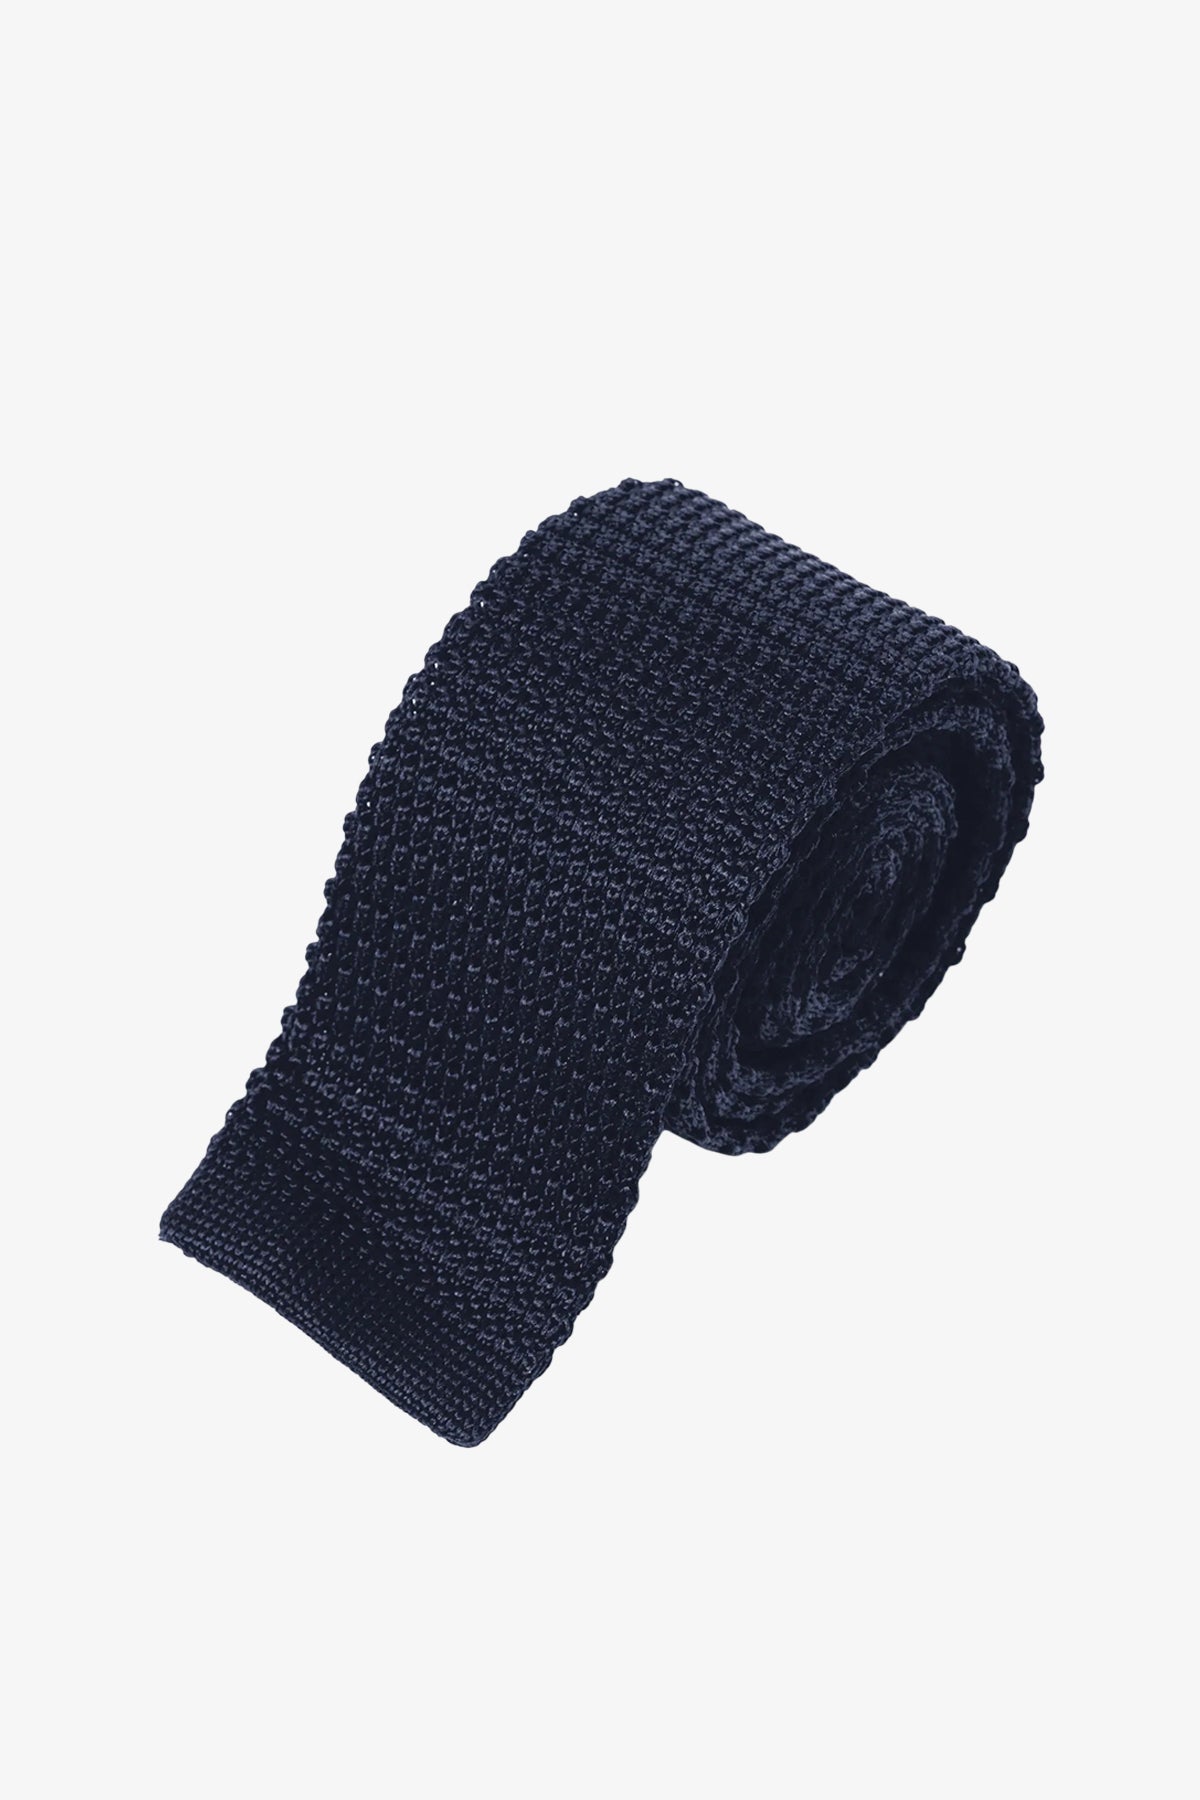 Silk Knitted Tie - Navy